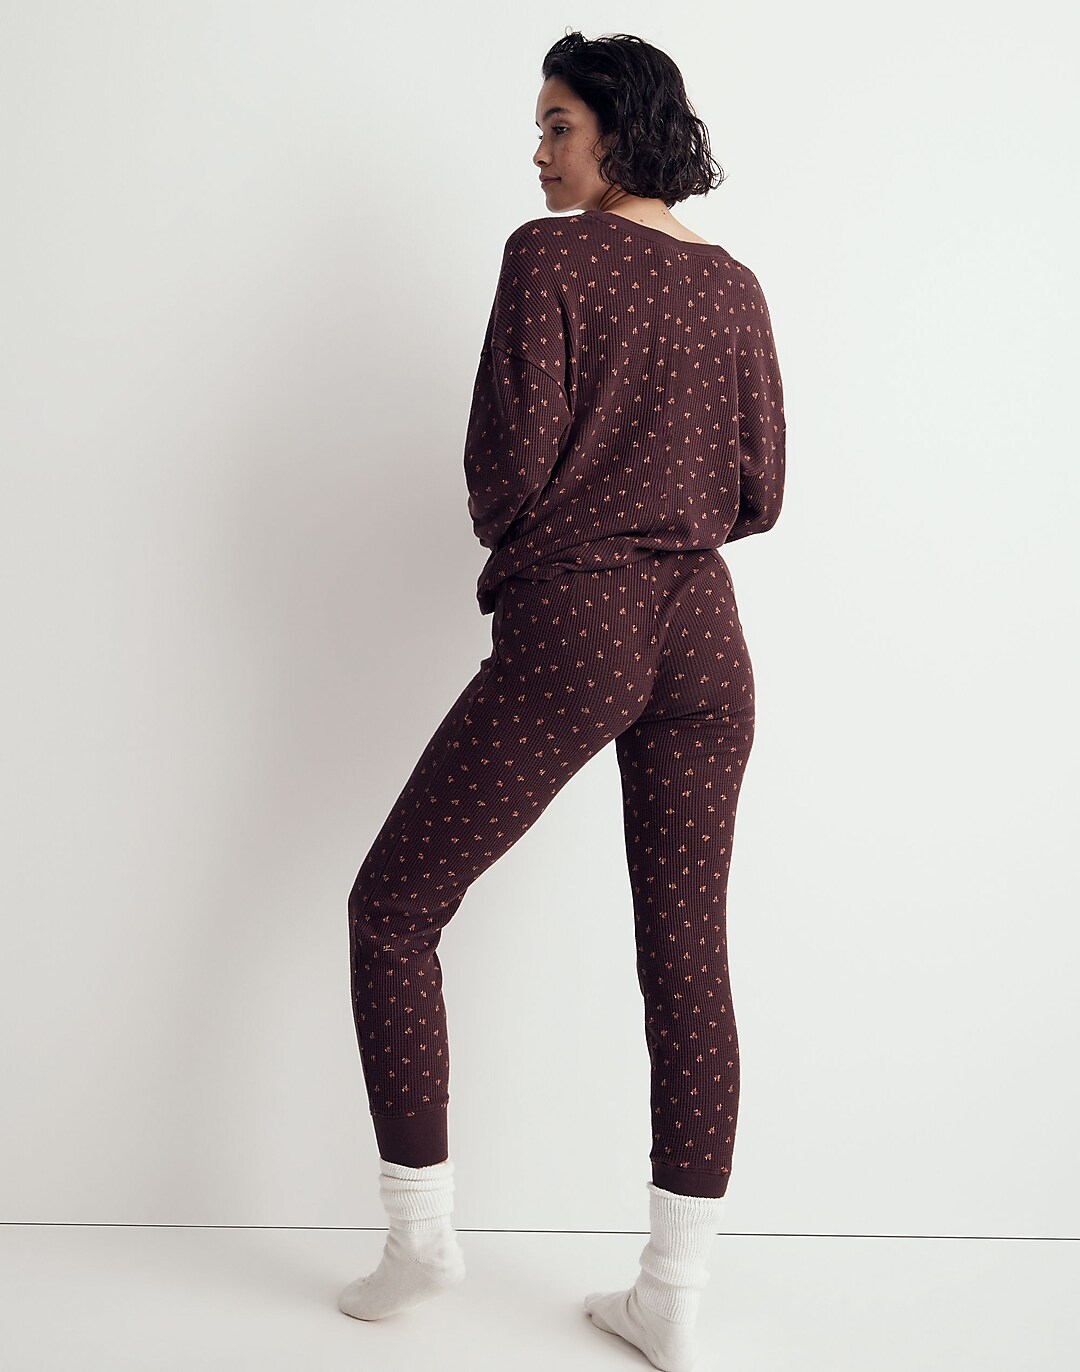 MIXTE PIJAMAS #mixte #pajamas #pijamas #sleepwear #fashion #style